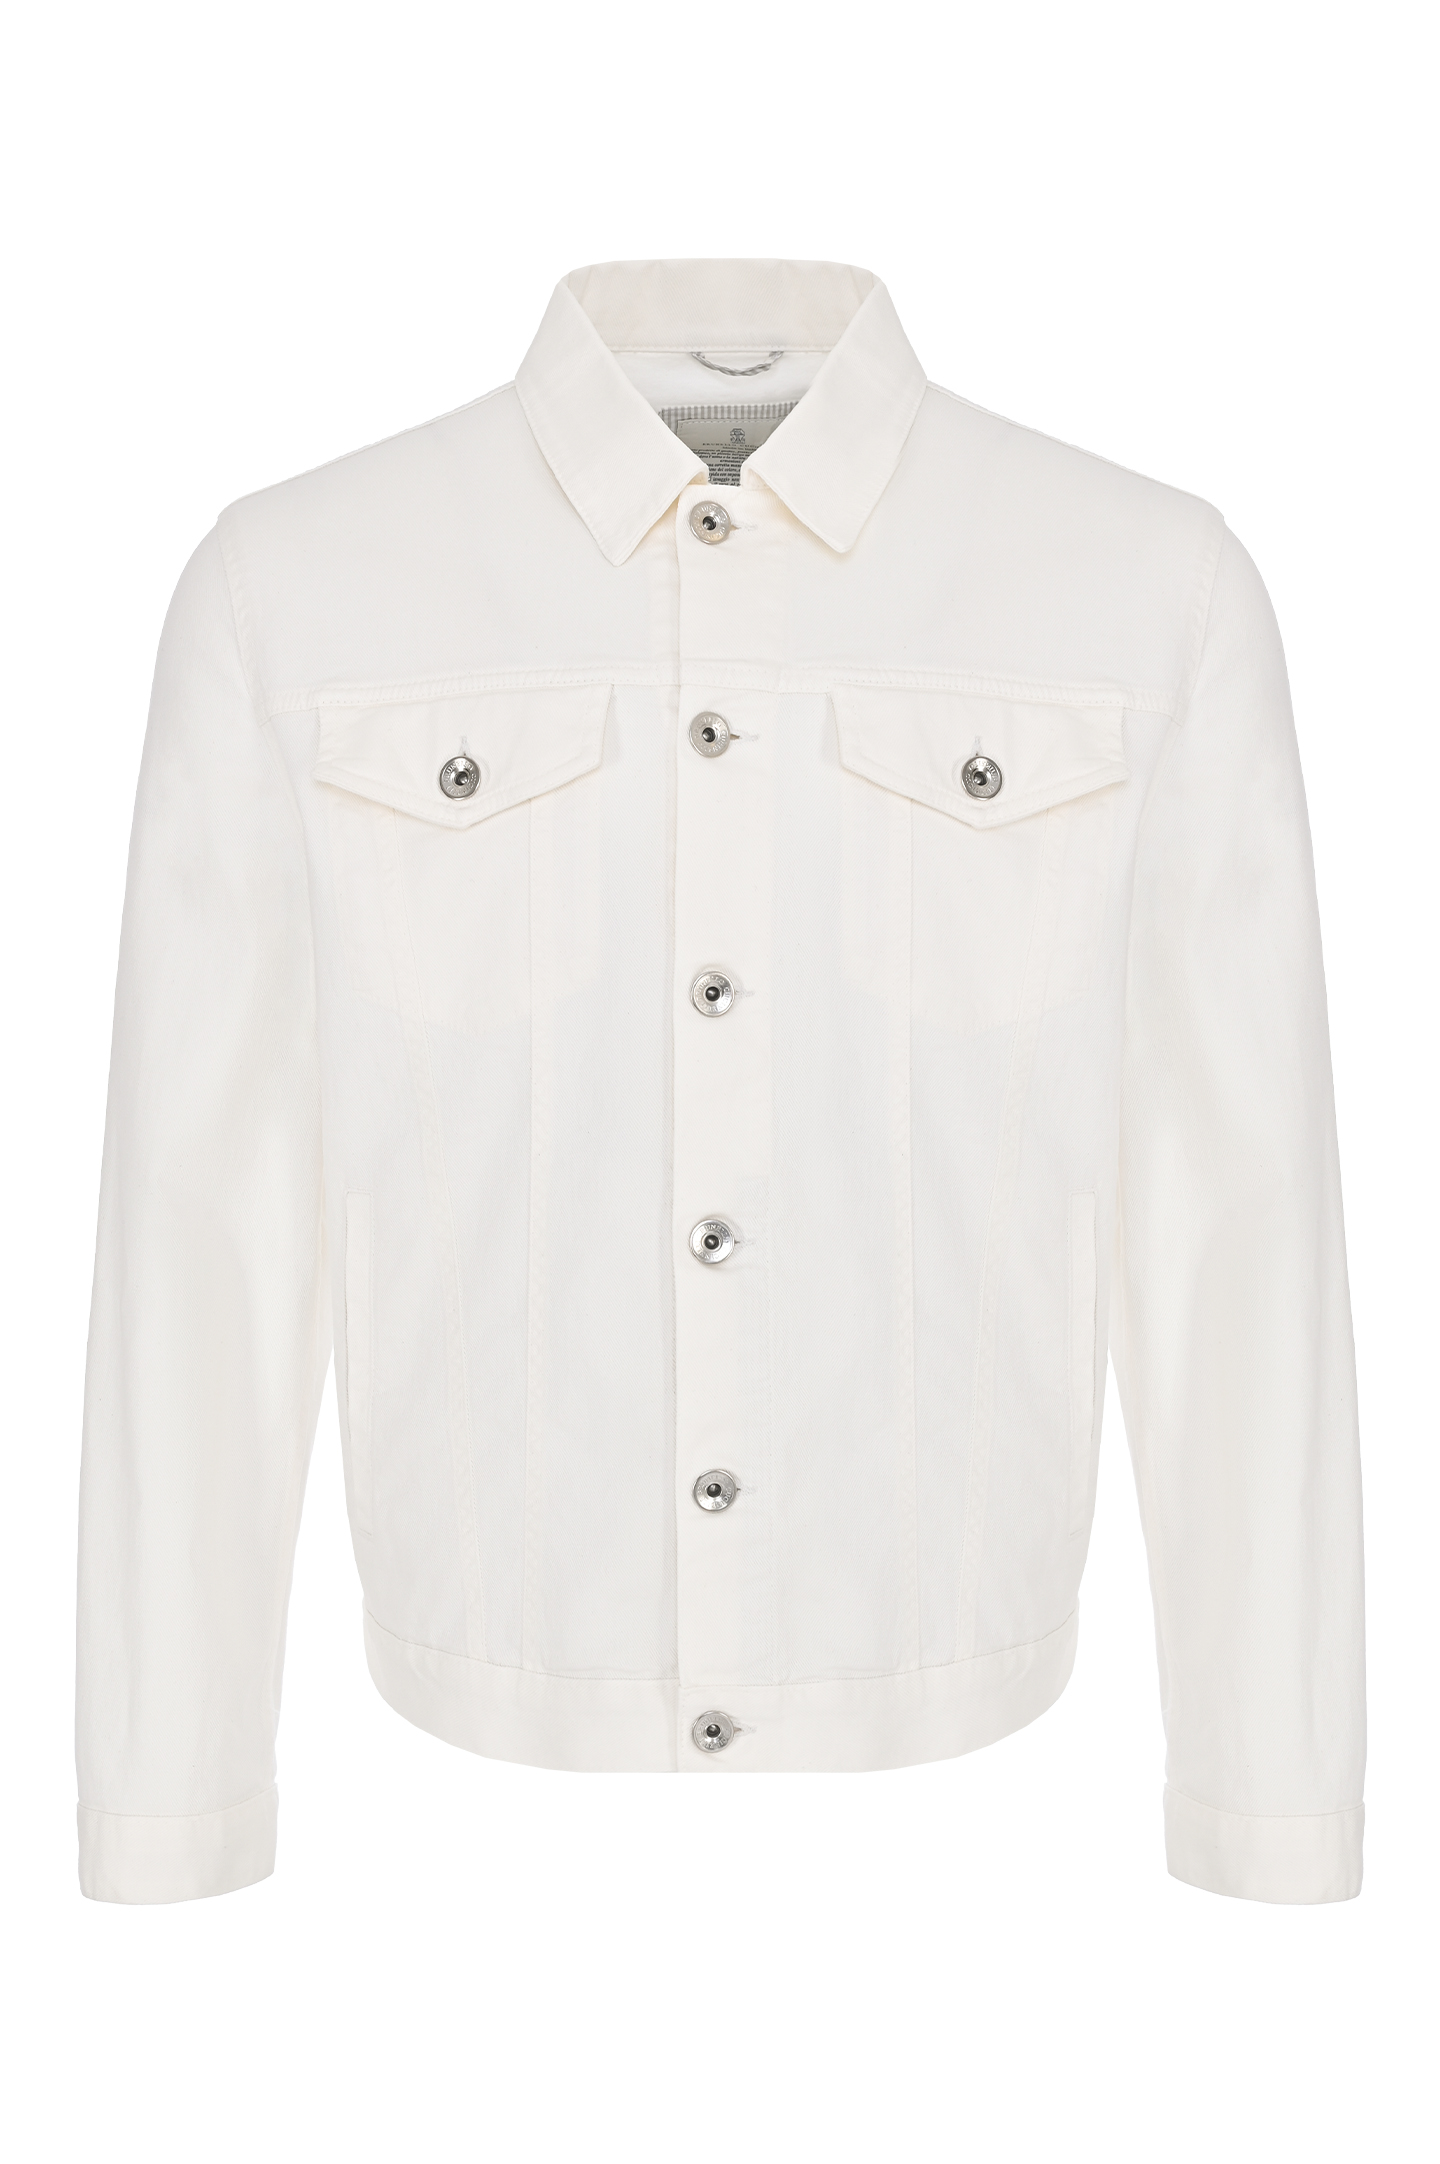 Джинсовая куртка с карманами BRUNELLO  CUCINELLI M277P6900, цвет: Белый, Мужской